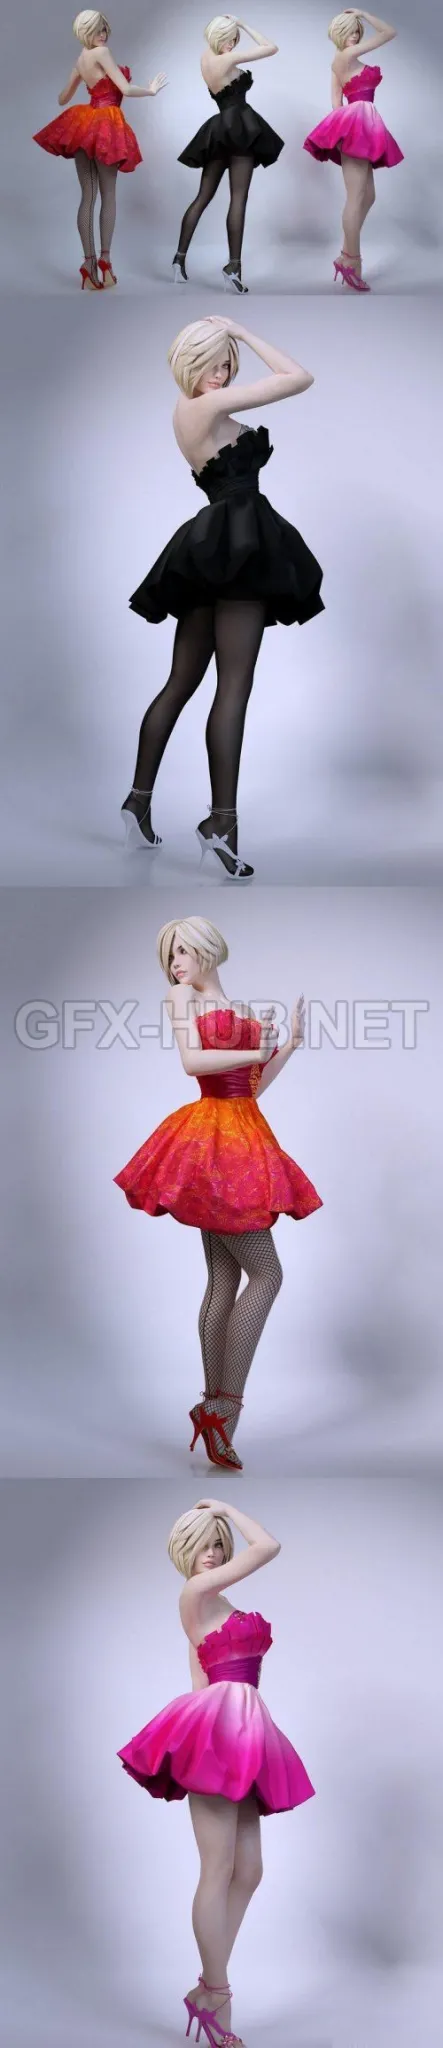 PBR Game 3D Model – Girl Skirt Stockings